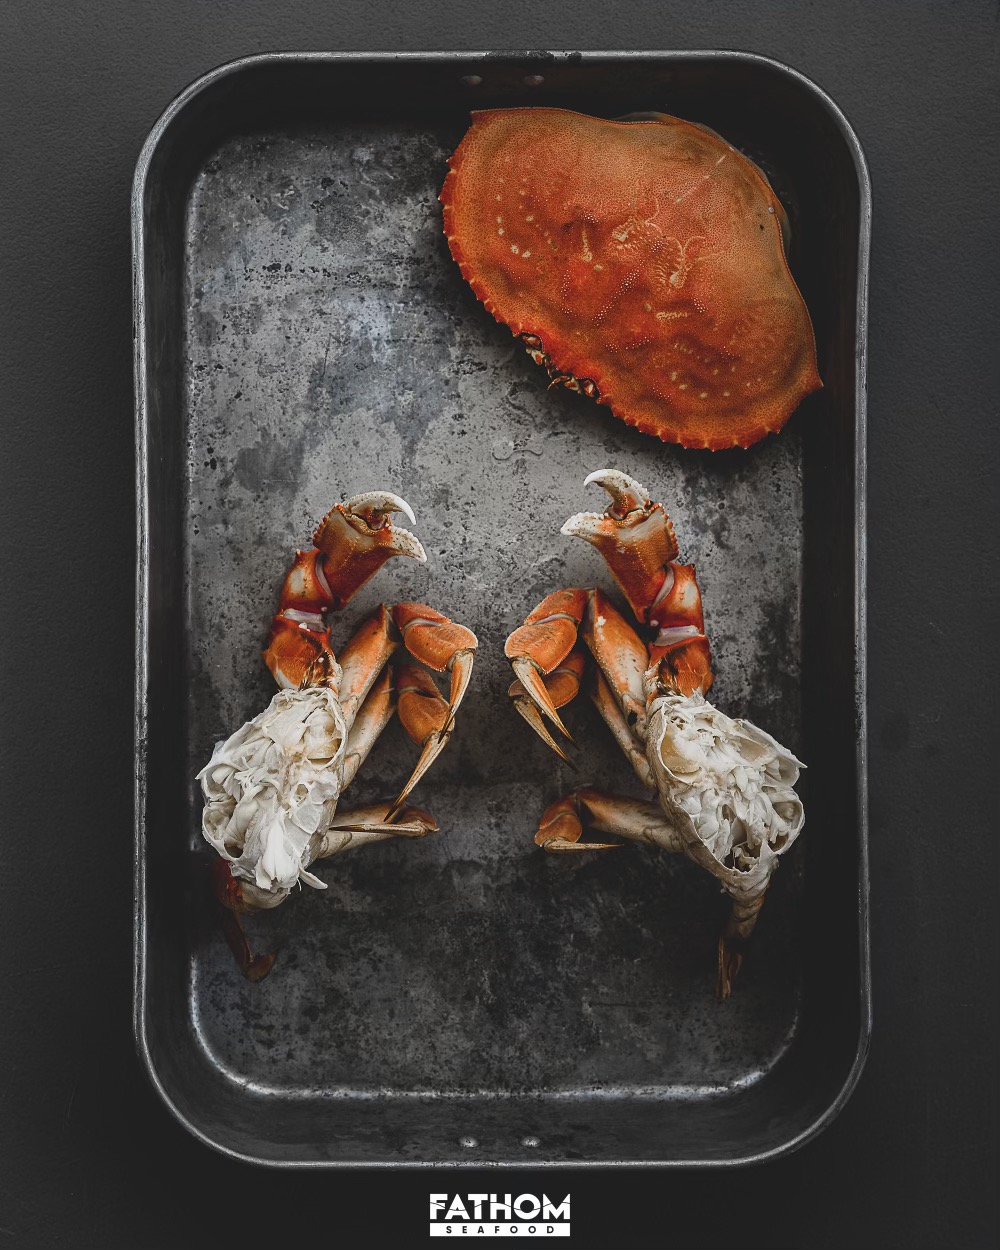 dungeness-crab-fathom-seafood-gordon-Fox